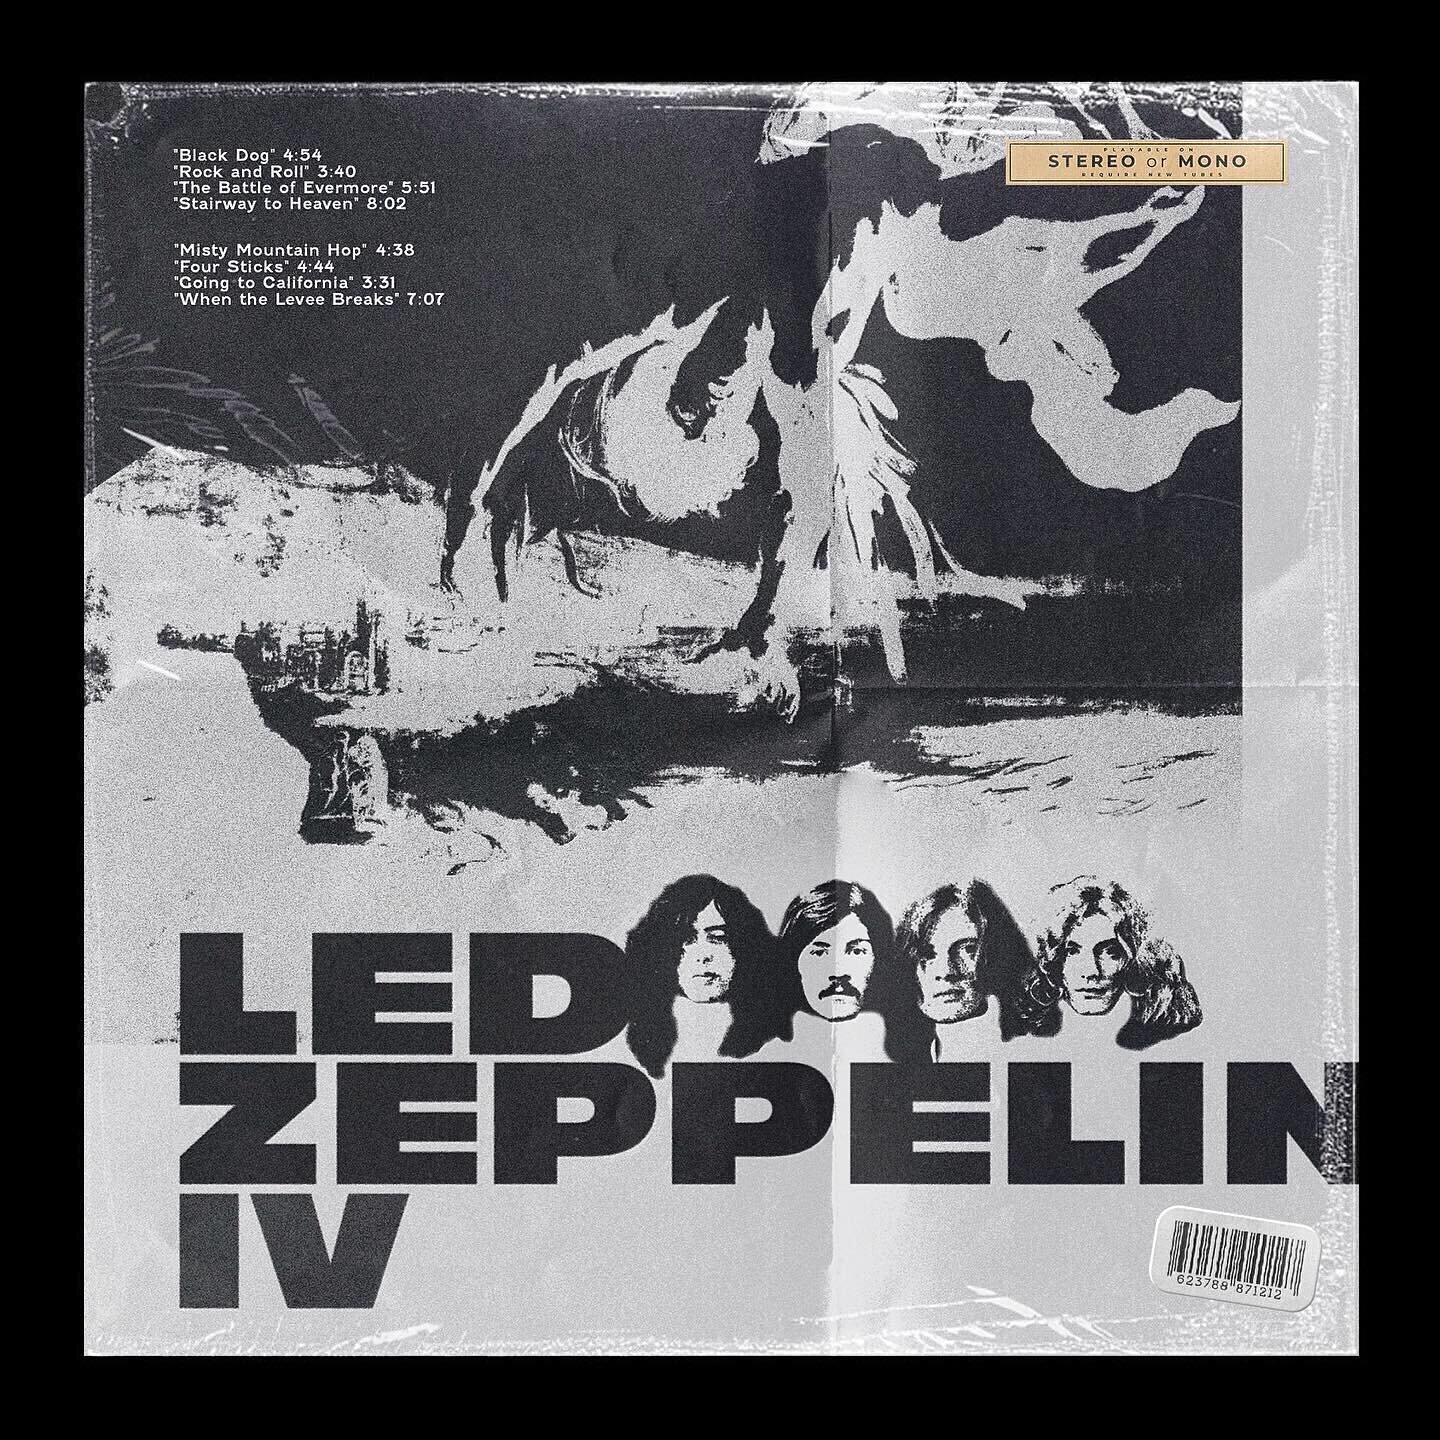 Led Zeppelin &ldquo;Led Zeppelin IV&rdquo; (1971)-Album cover redesign. @ledzeppelin